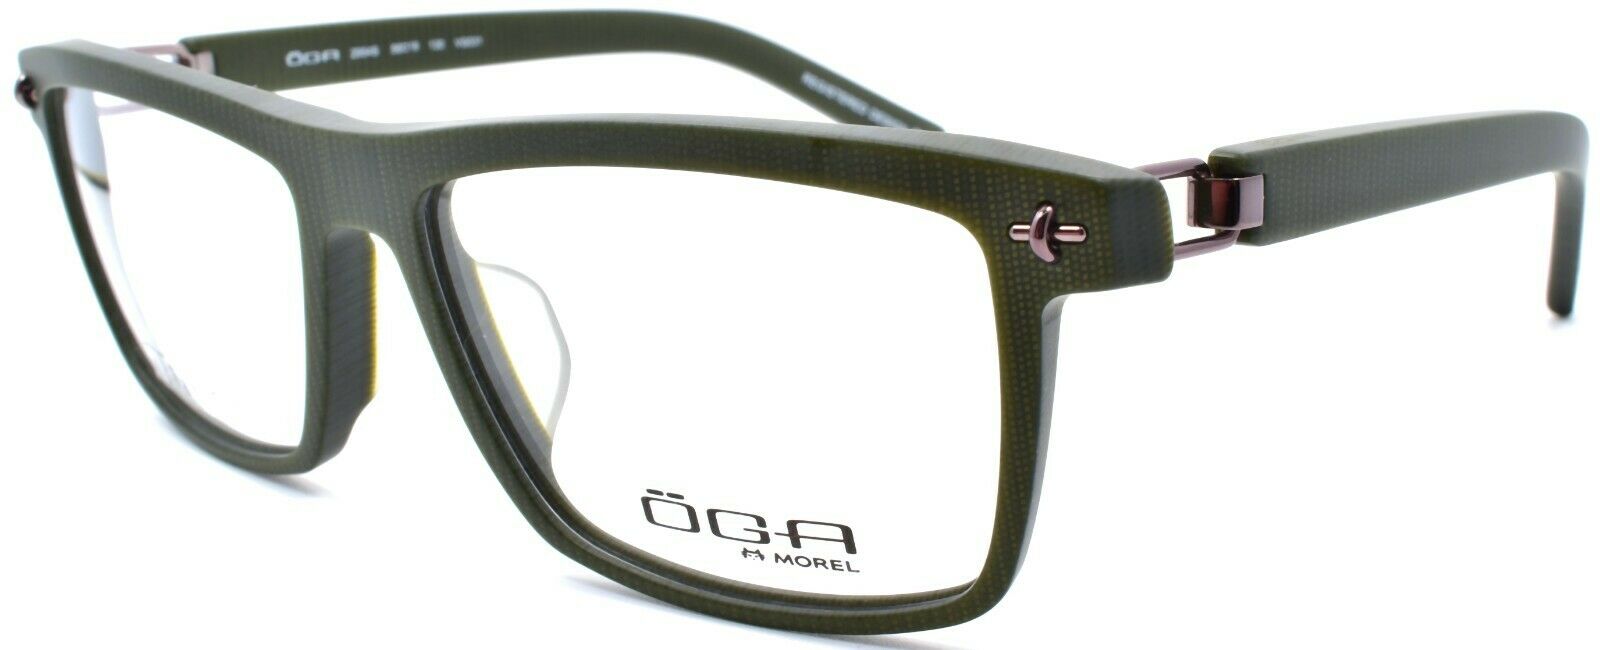 1-OGA by Morel 2954S VG031 Men's Eyeglasses Frames Asian Fit 56-16-130 Olive-3604770890273-IKSpecs